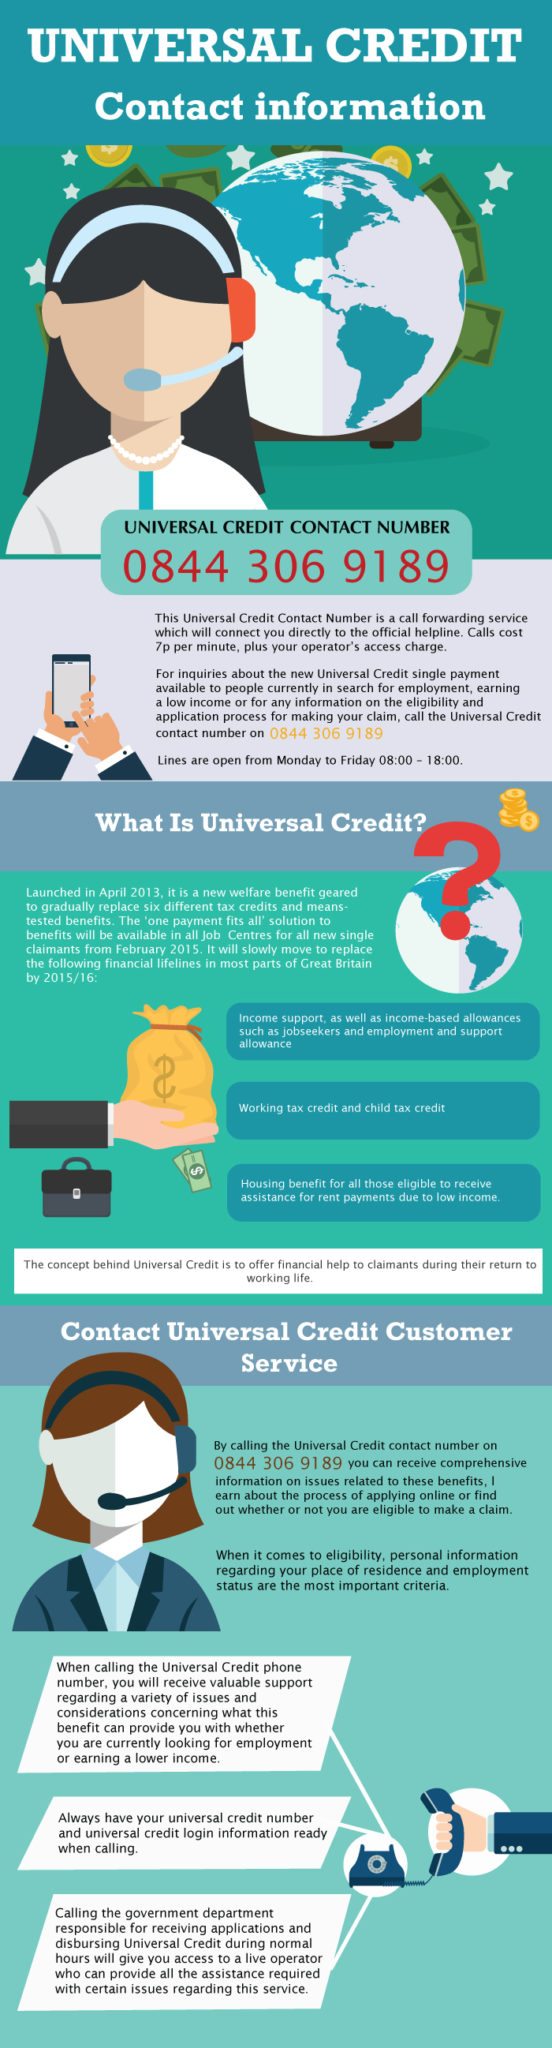 Universal Credit Helpline